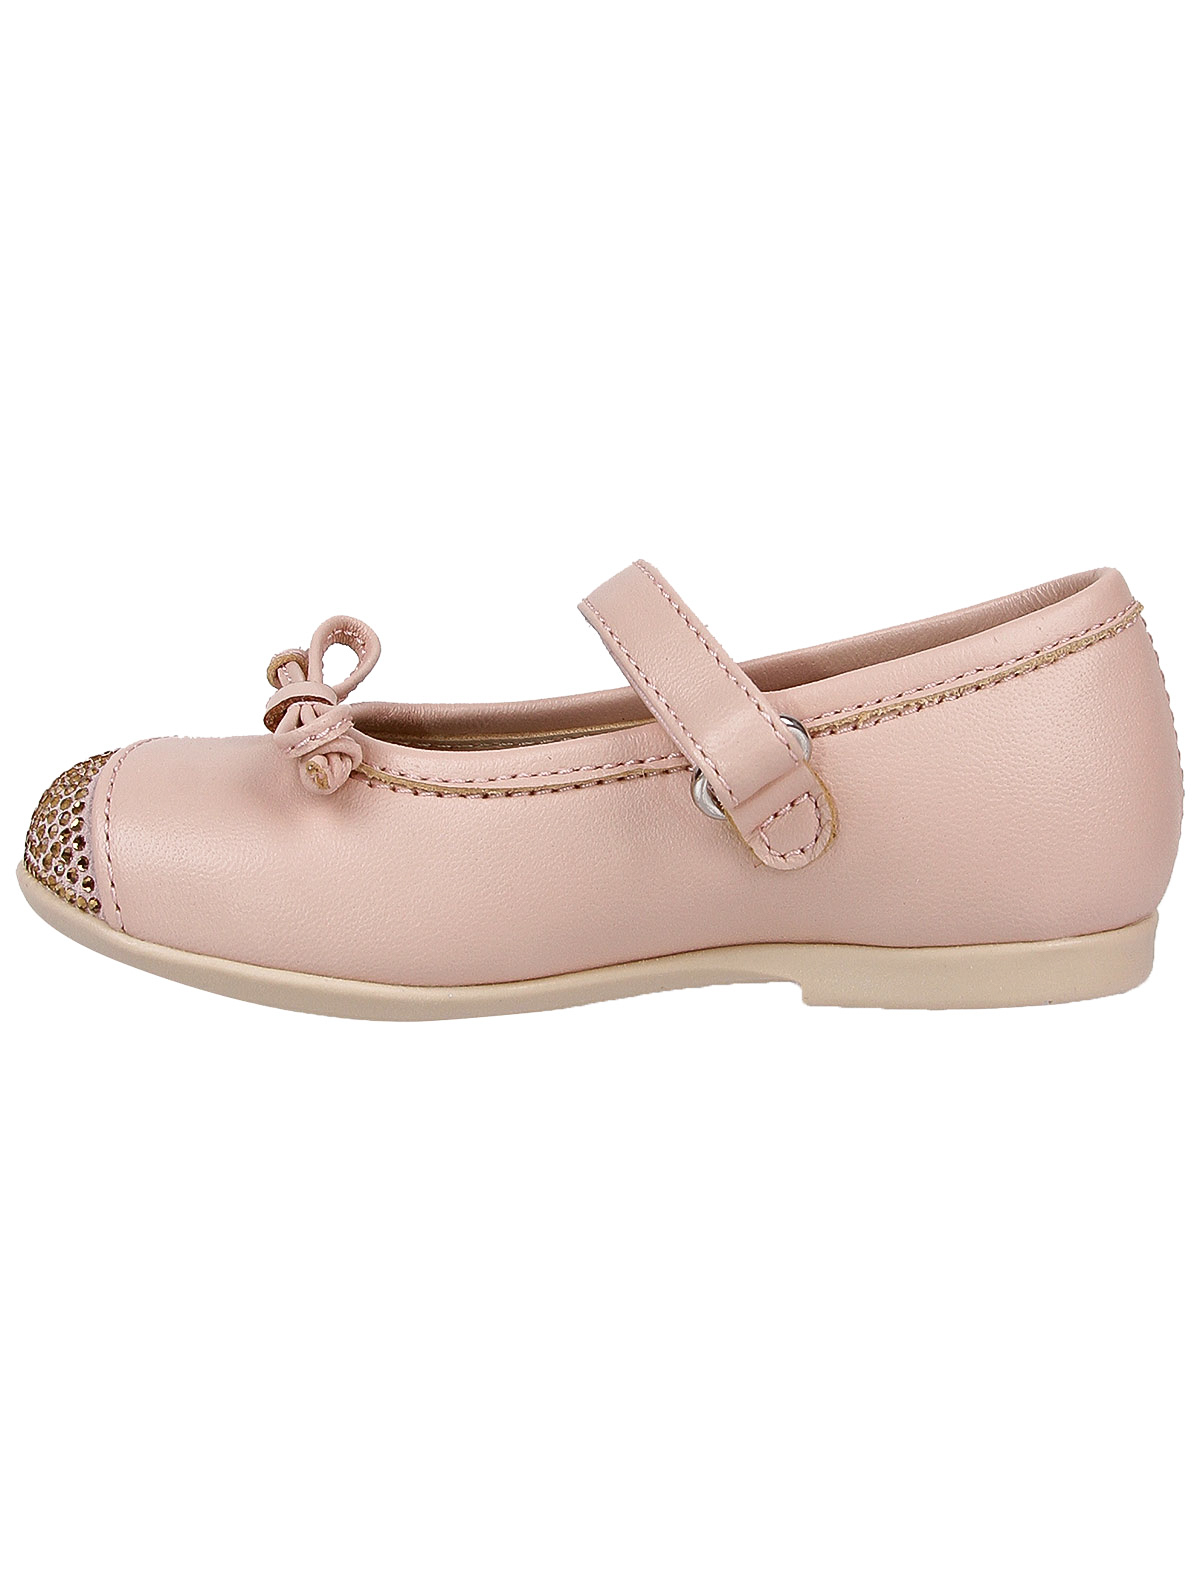 Туфли Florens 2197061, цвет розовый, размер 25 2014509070844 - фото 3